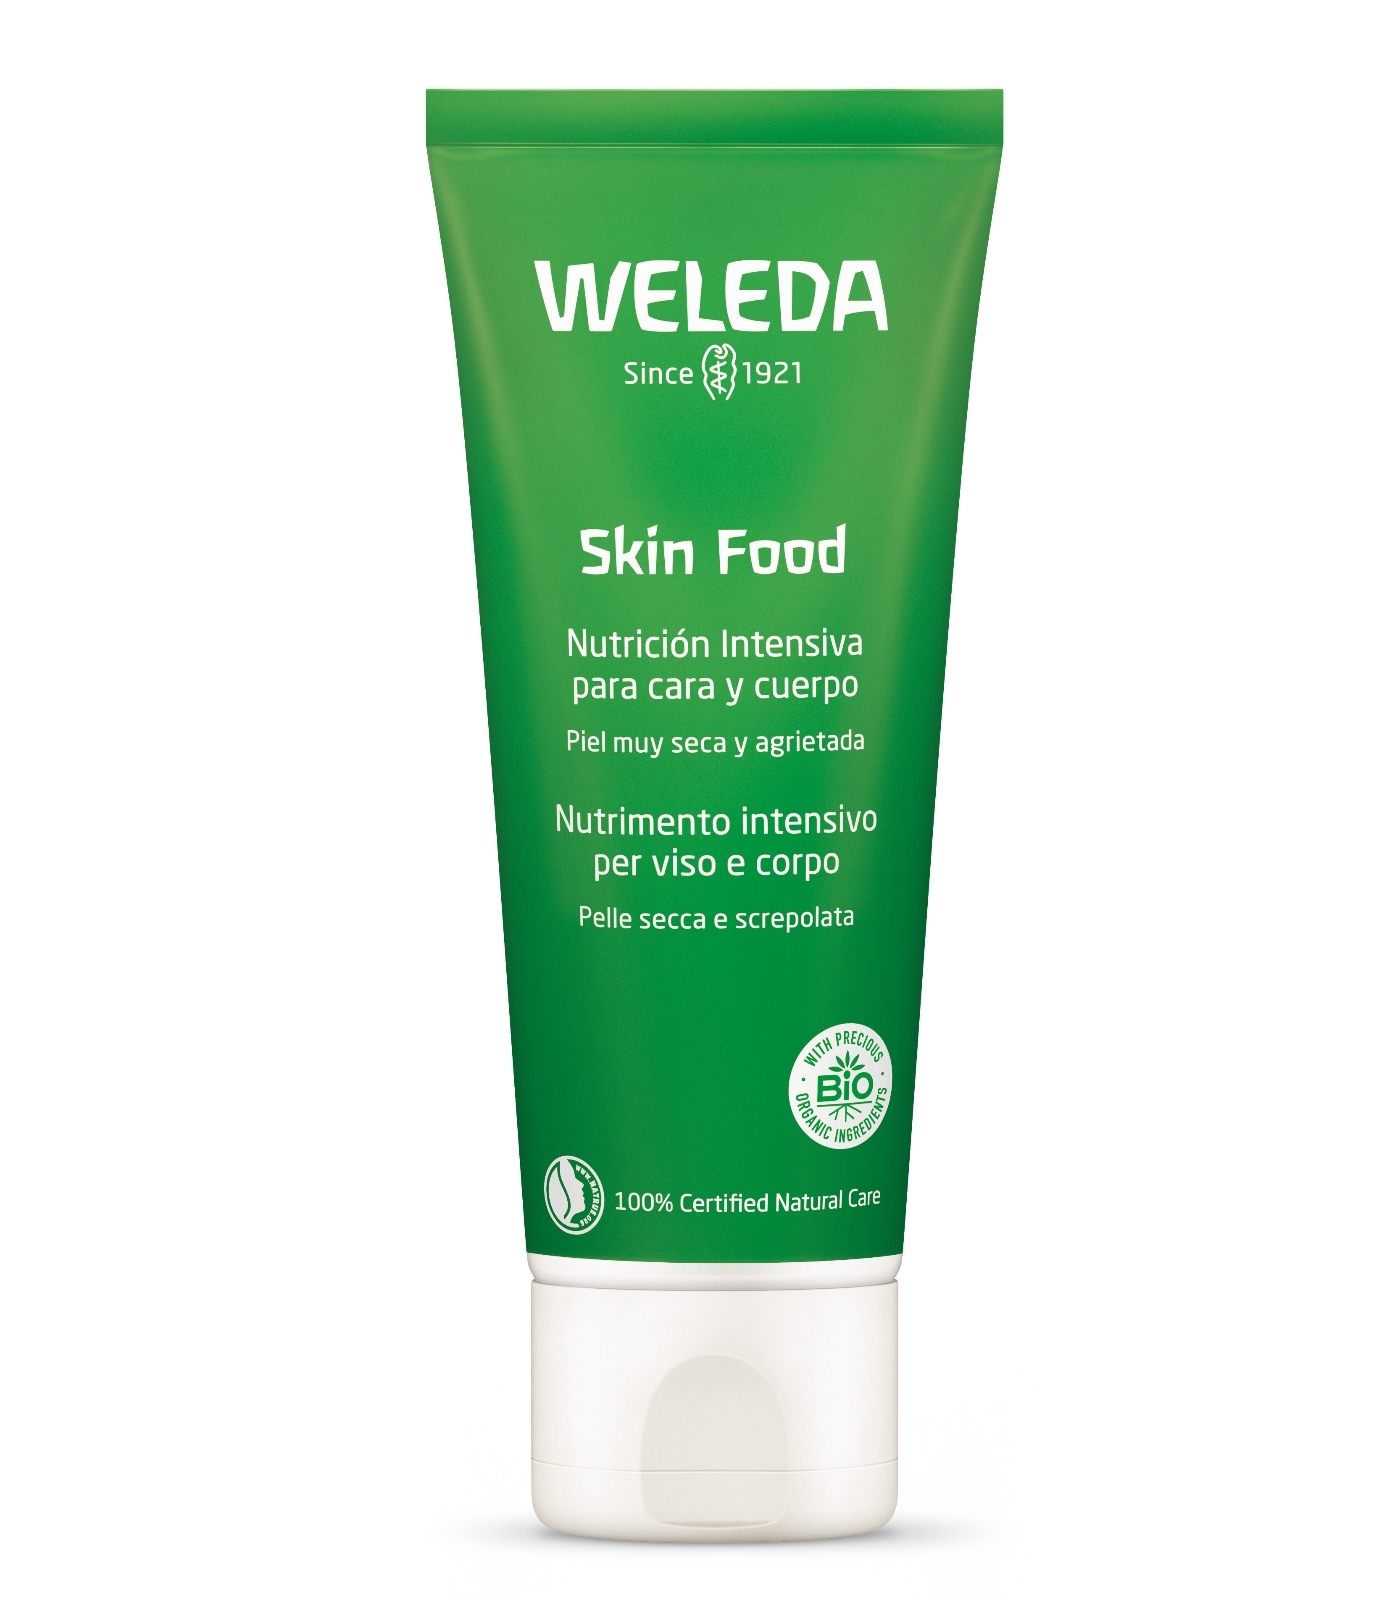 Skin Food de Weleda.